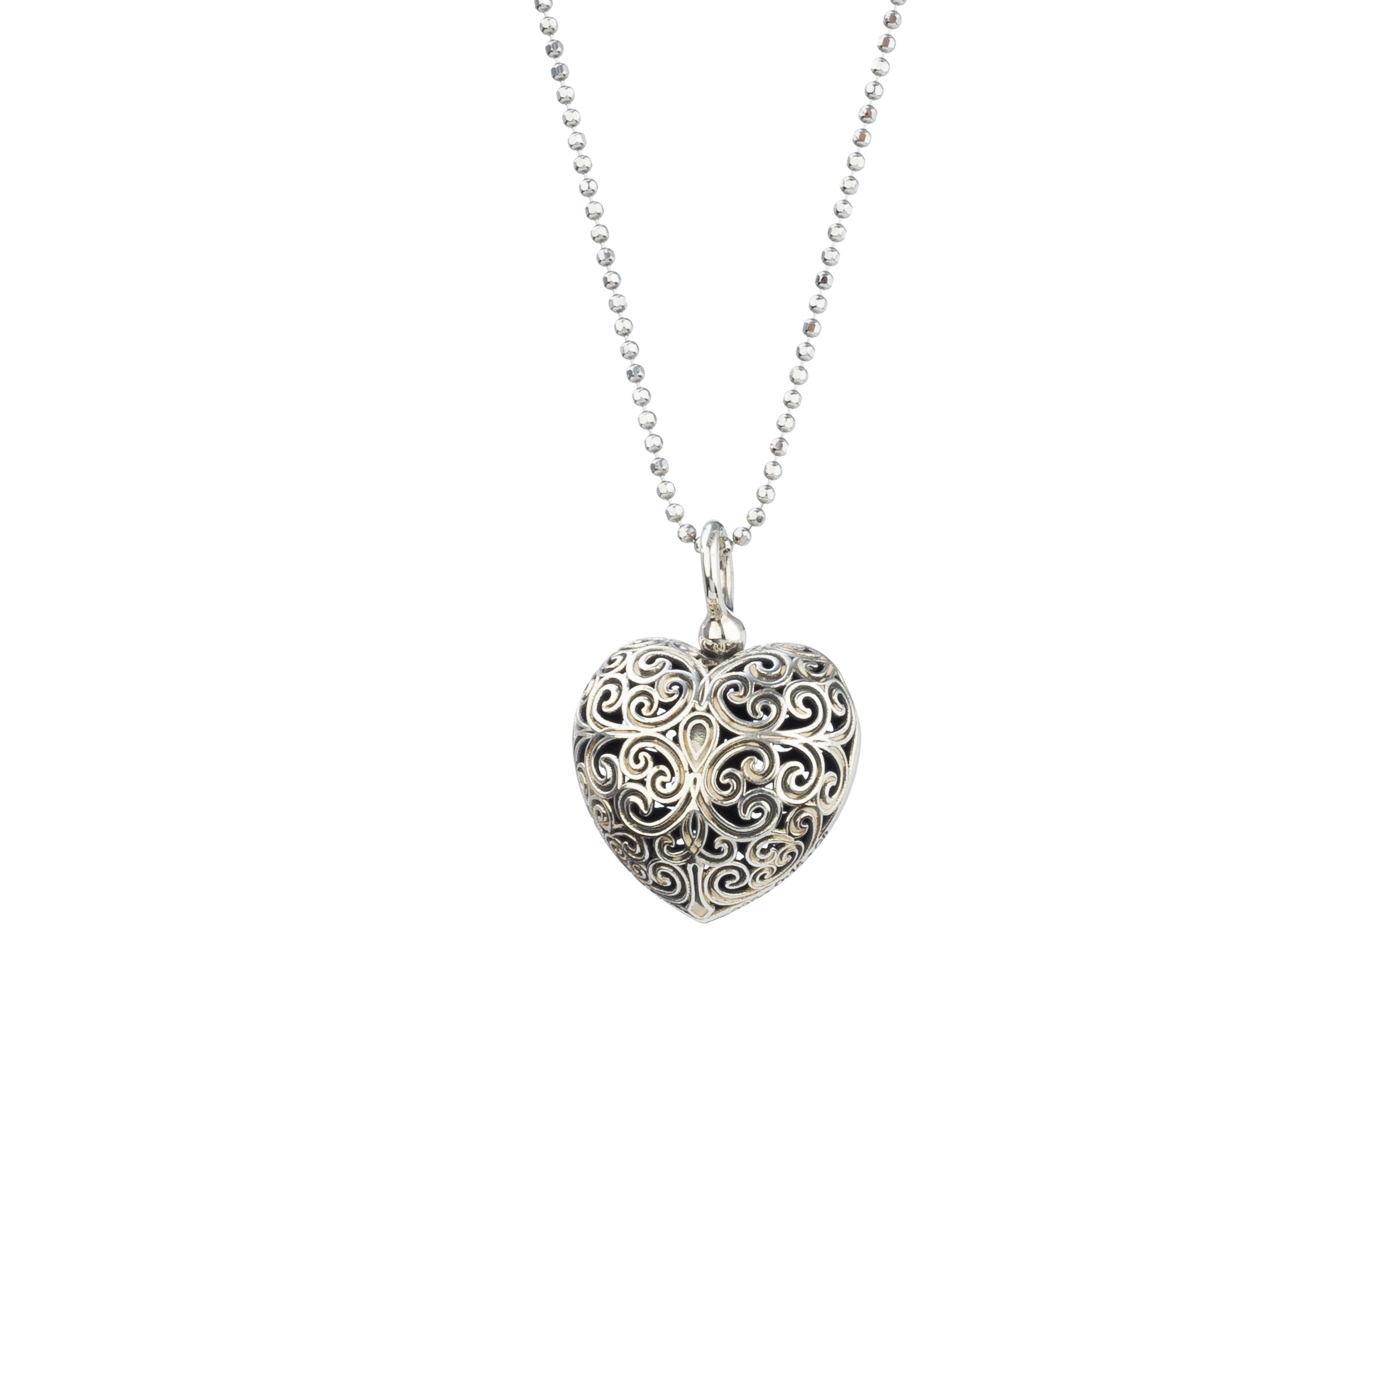 Kallisto Heart pendant in oxidized silver 925 - Gerochristo Jewelry